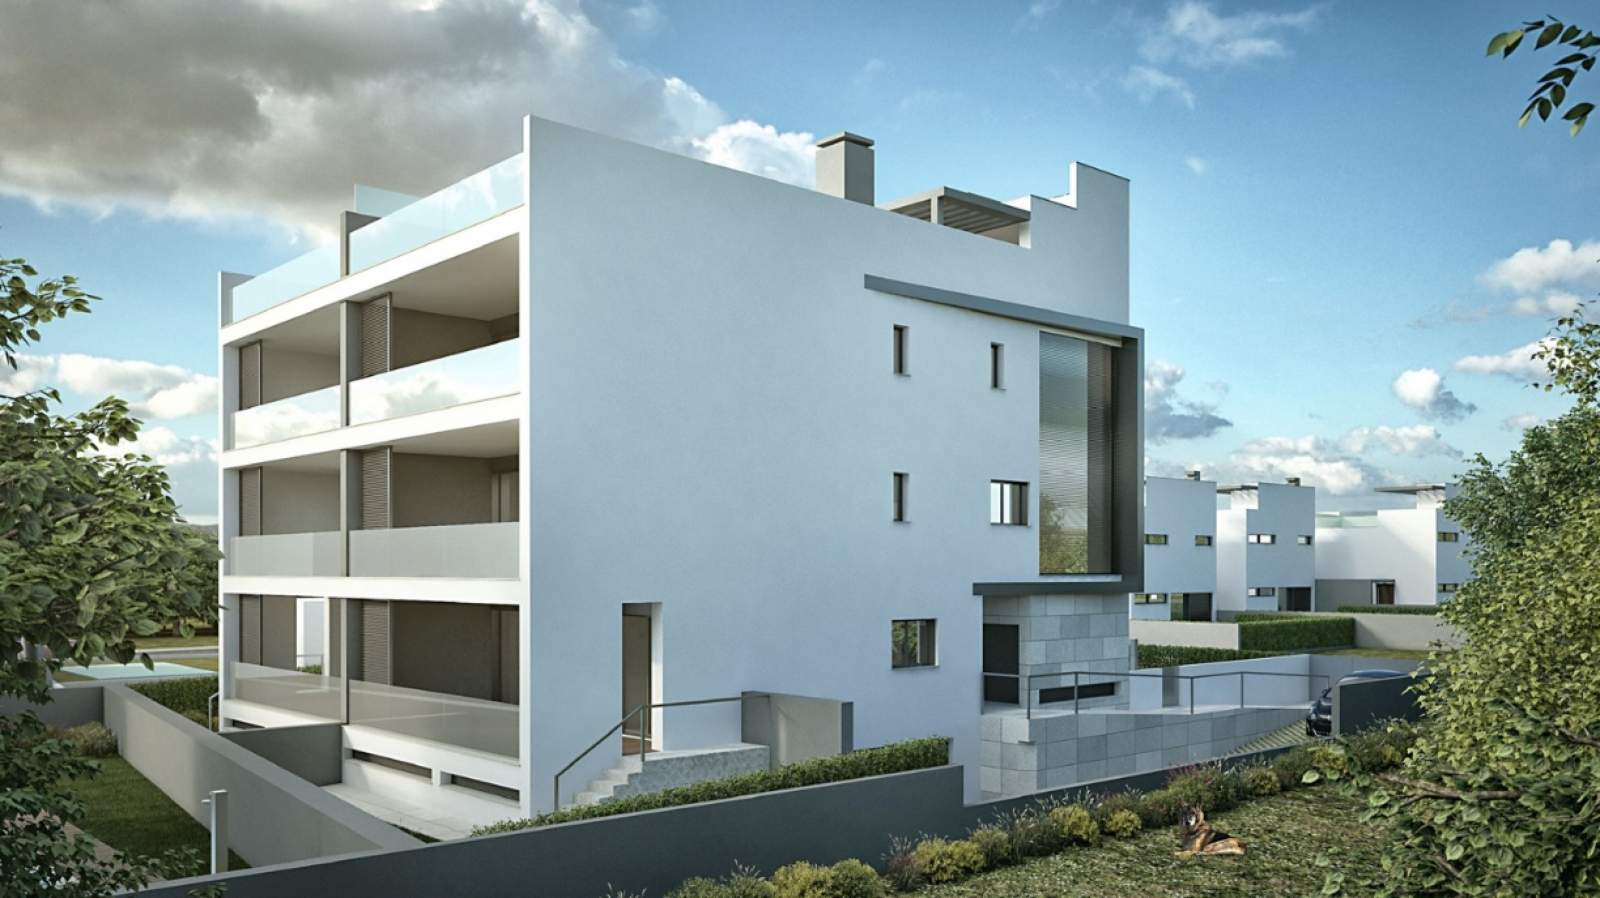 Venda de apartamento com vista mar, Tavira, Algarve, Portugal_138737